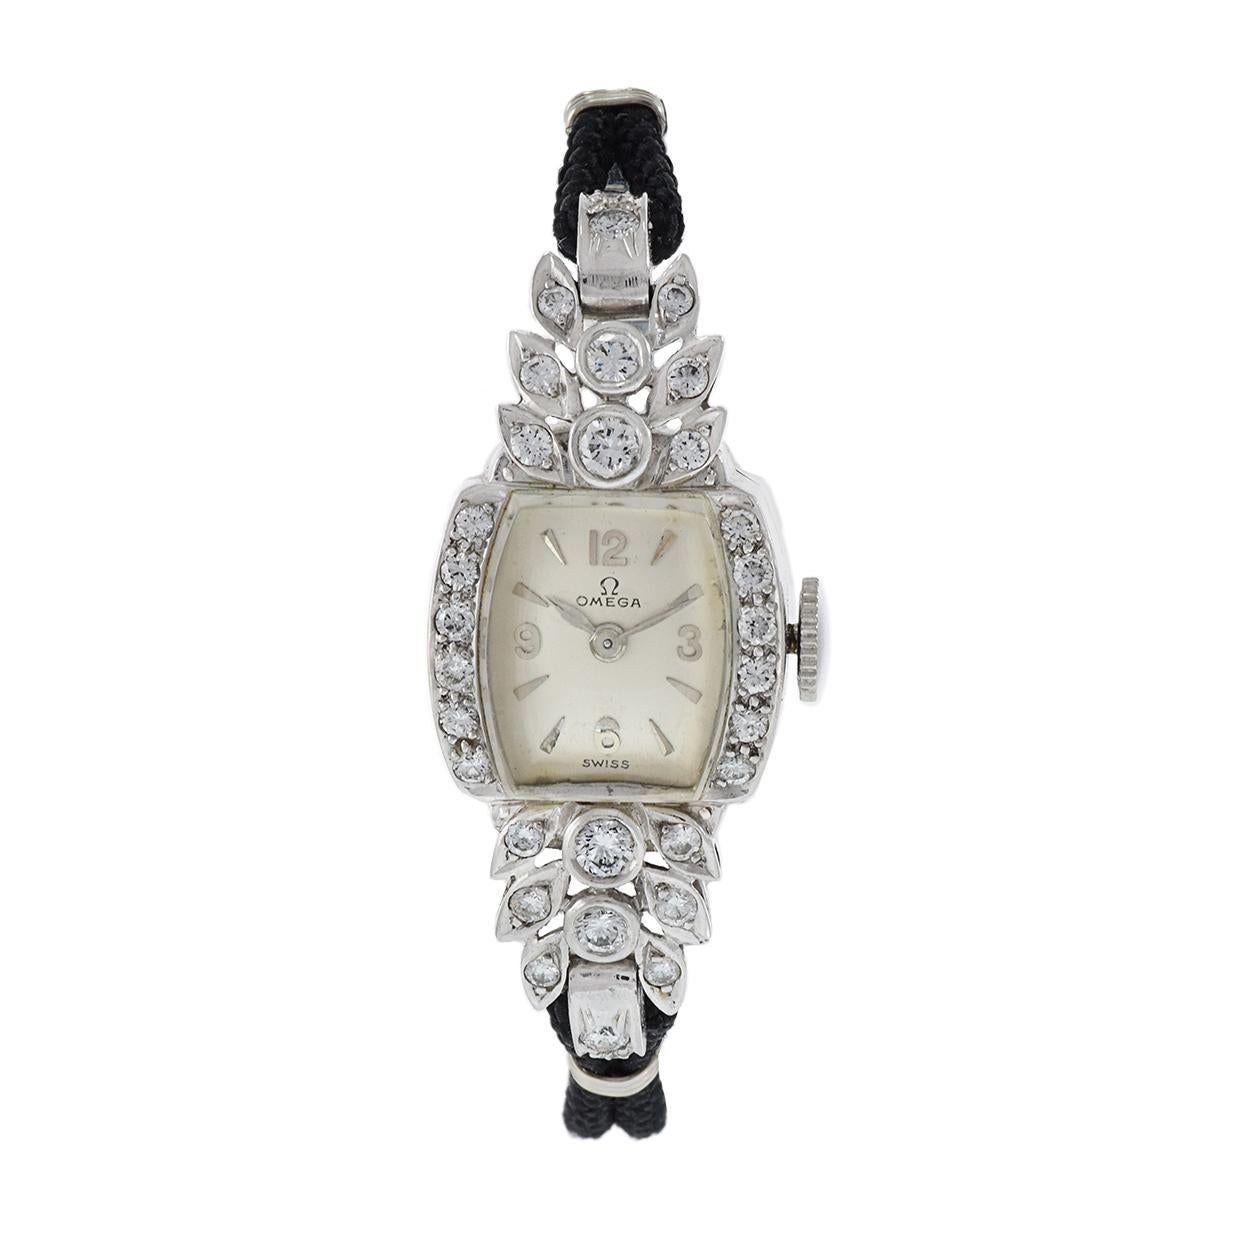 Elegance et histoire se rejoignent dans cette montre Omega vintage à diamants pour dames, datant des années 1950. Ce garde-temps est une véritable œuvre d'art. Il est logé dans un petit boîtier de 12 x 34 mm en platine et serti de diamants, associé